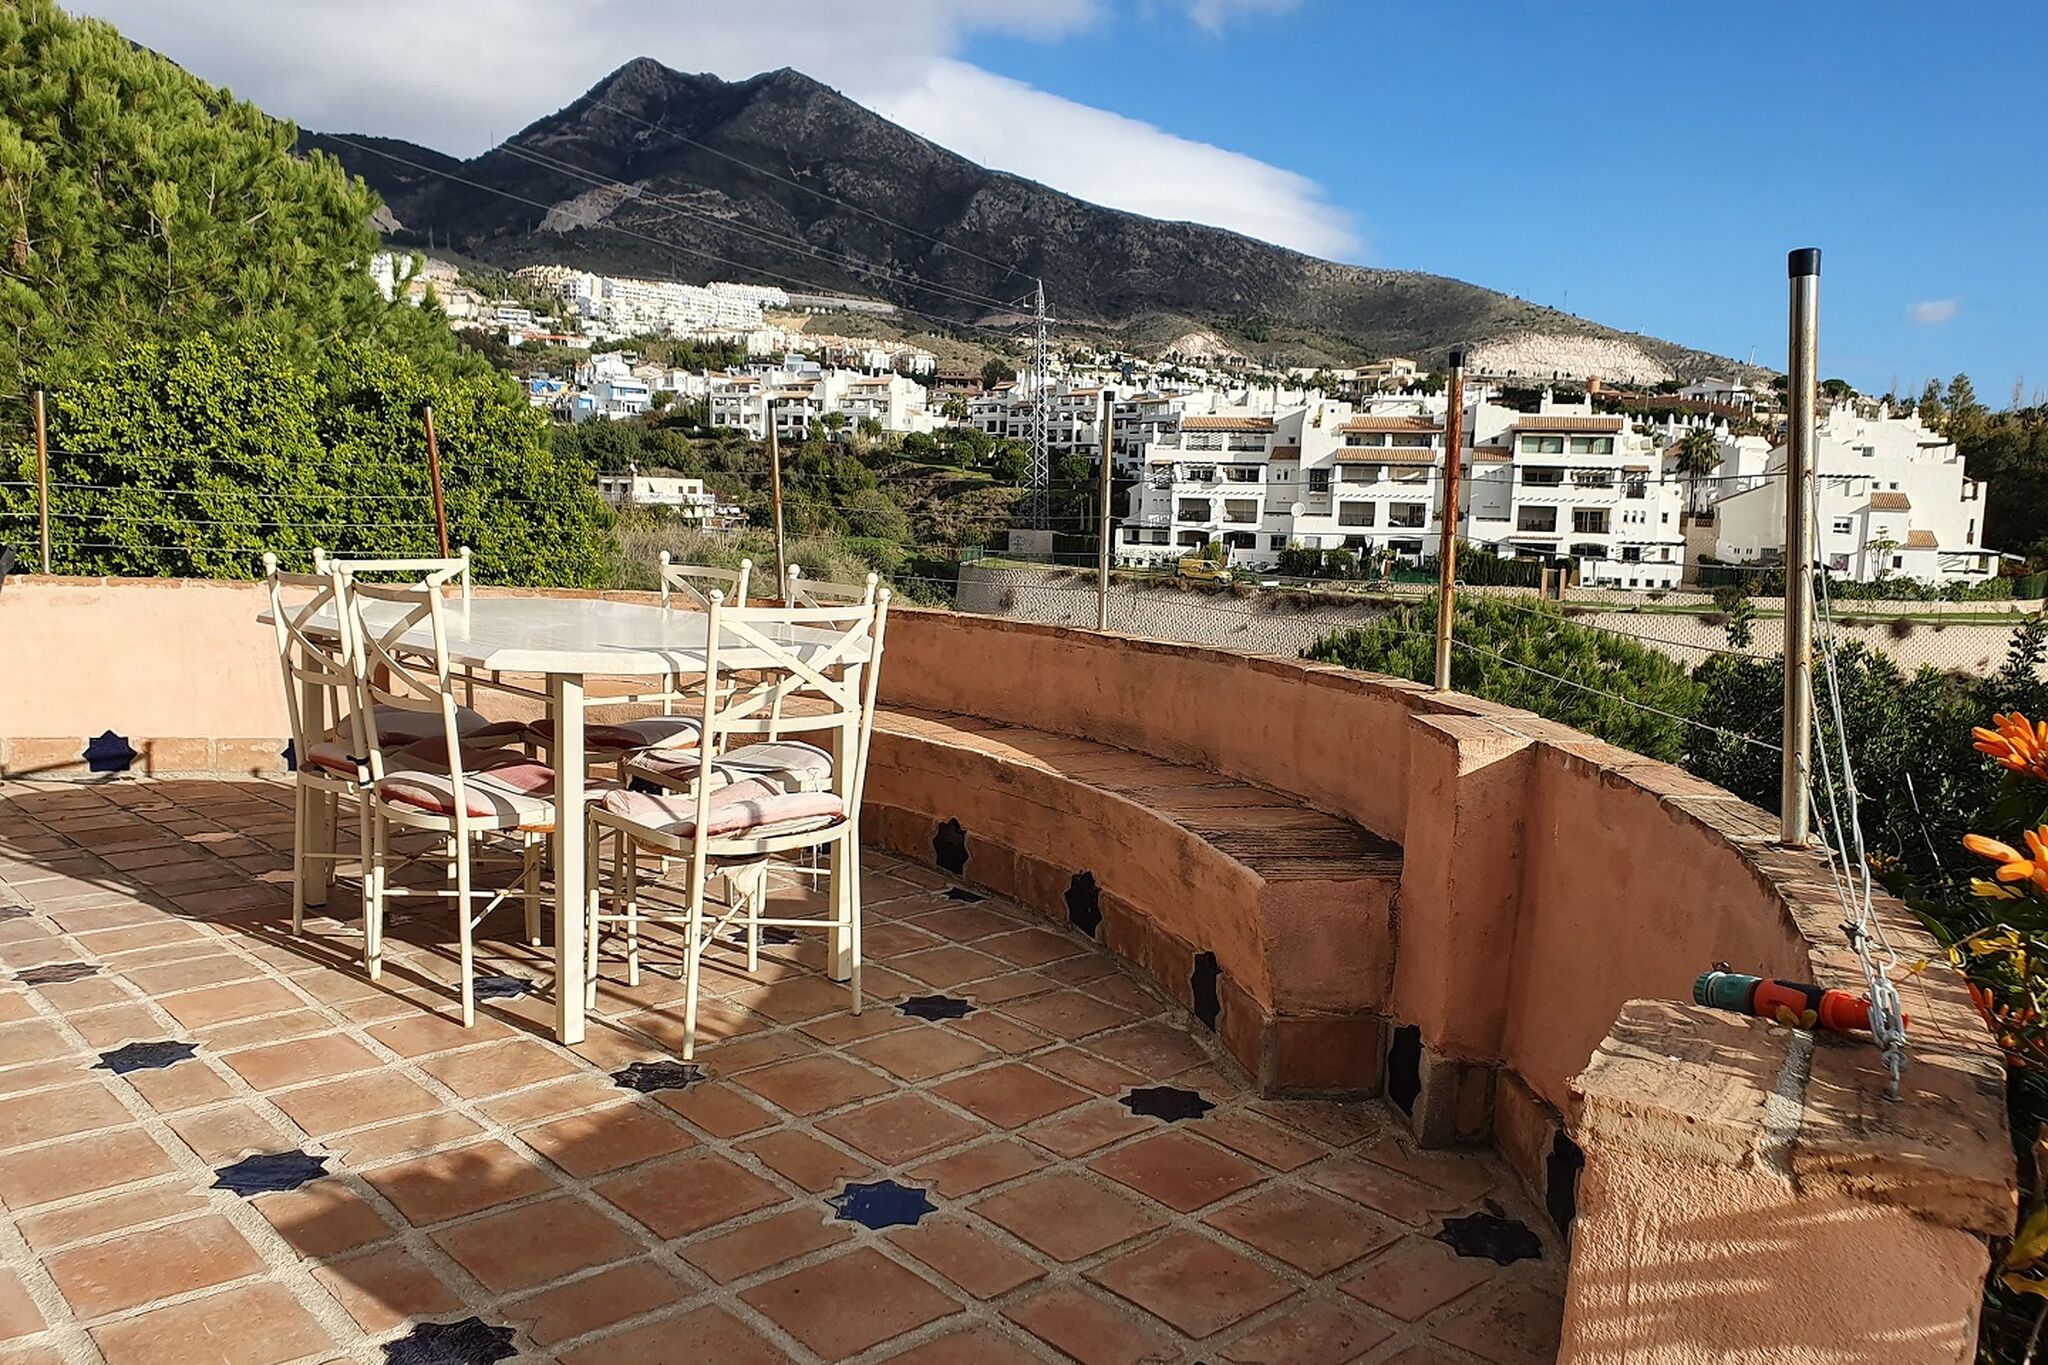 Festnehmende Villa in Benalmádena mit privatem Schwimmbad